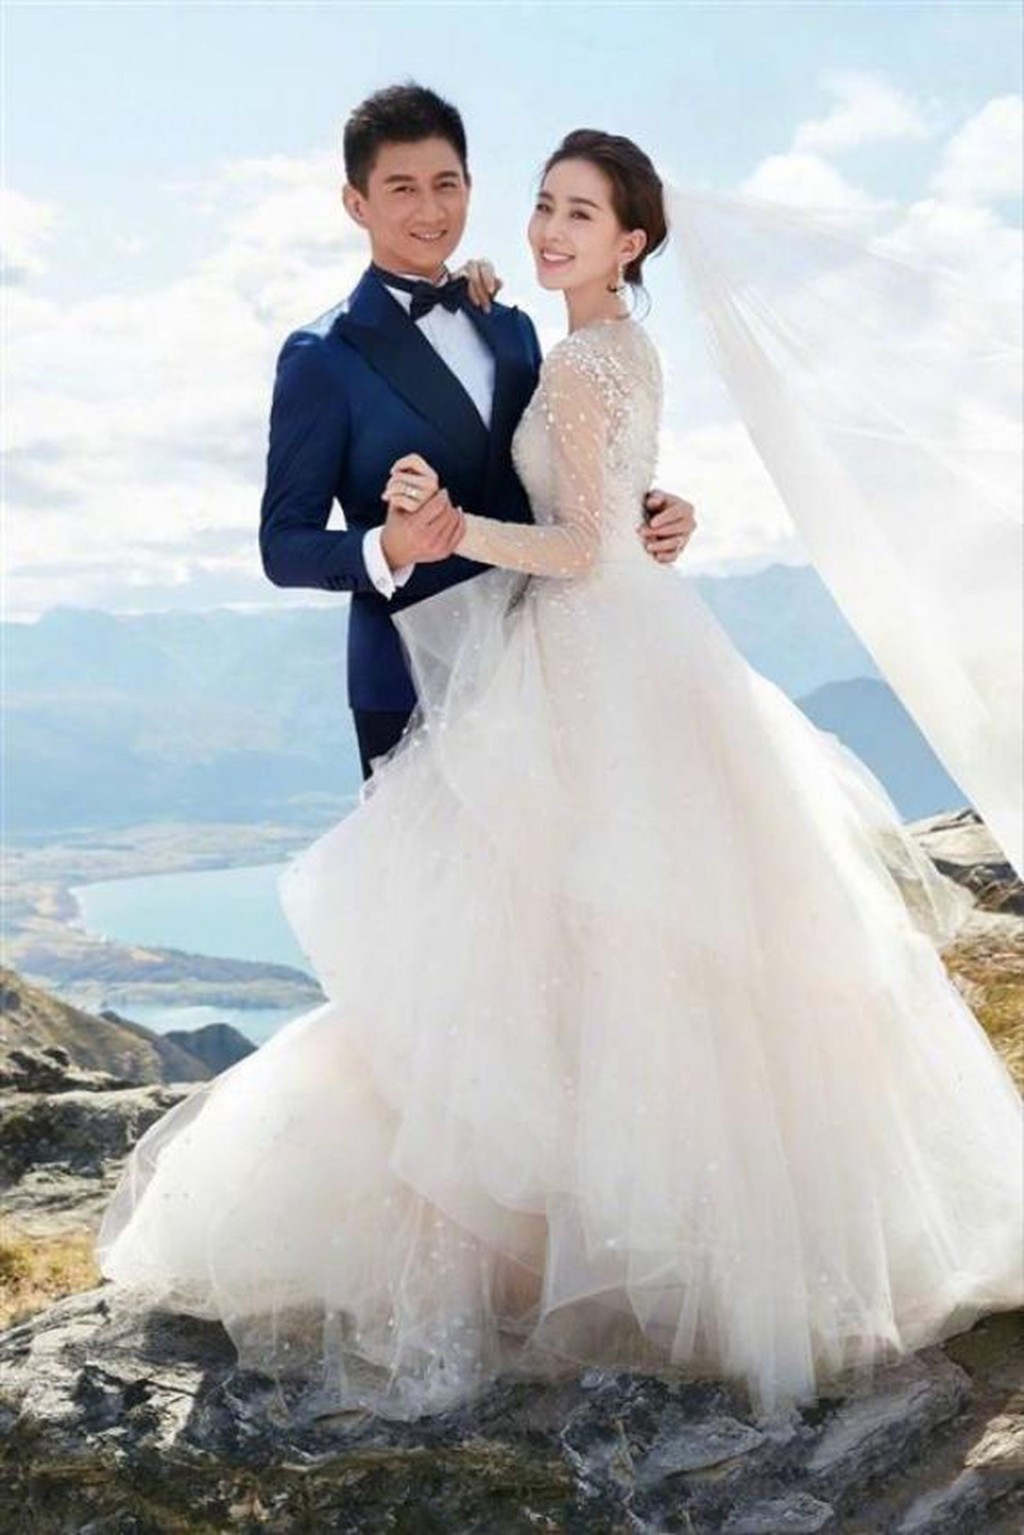 吴奇隆2018年12月与刘诗诗结婚。